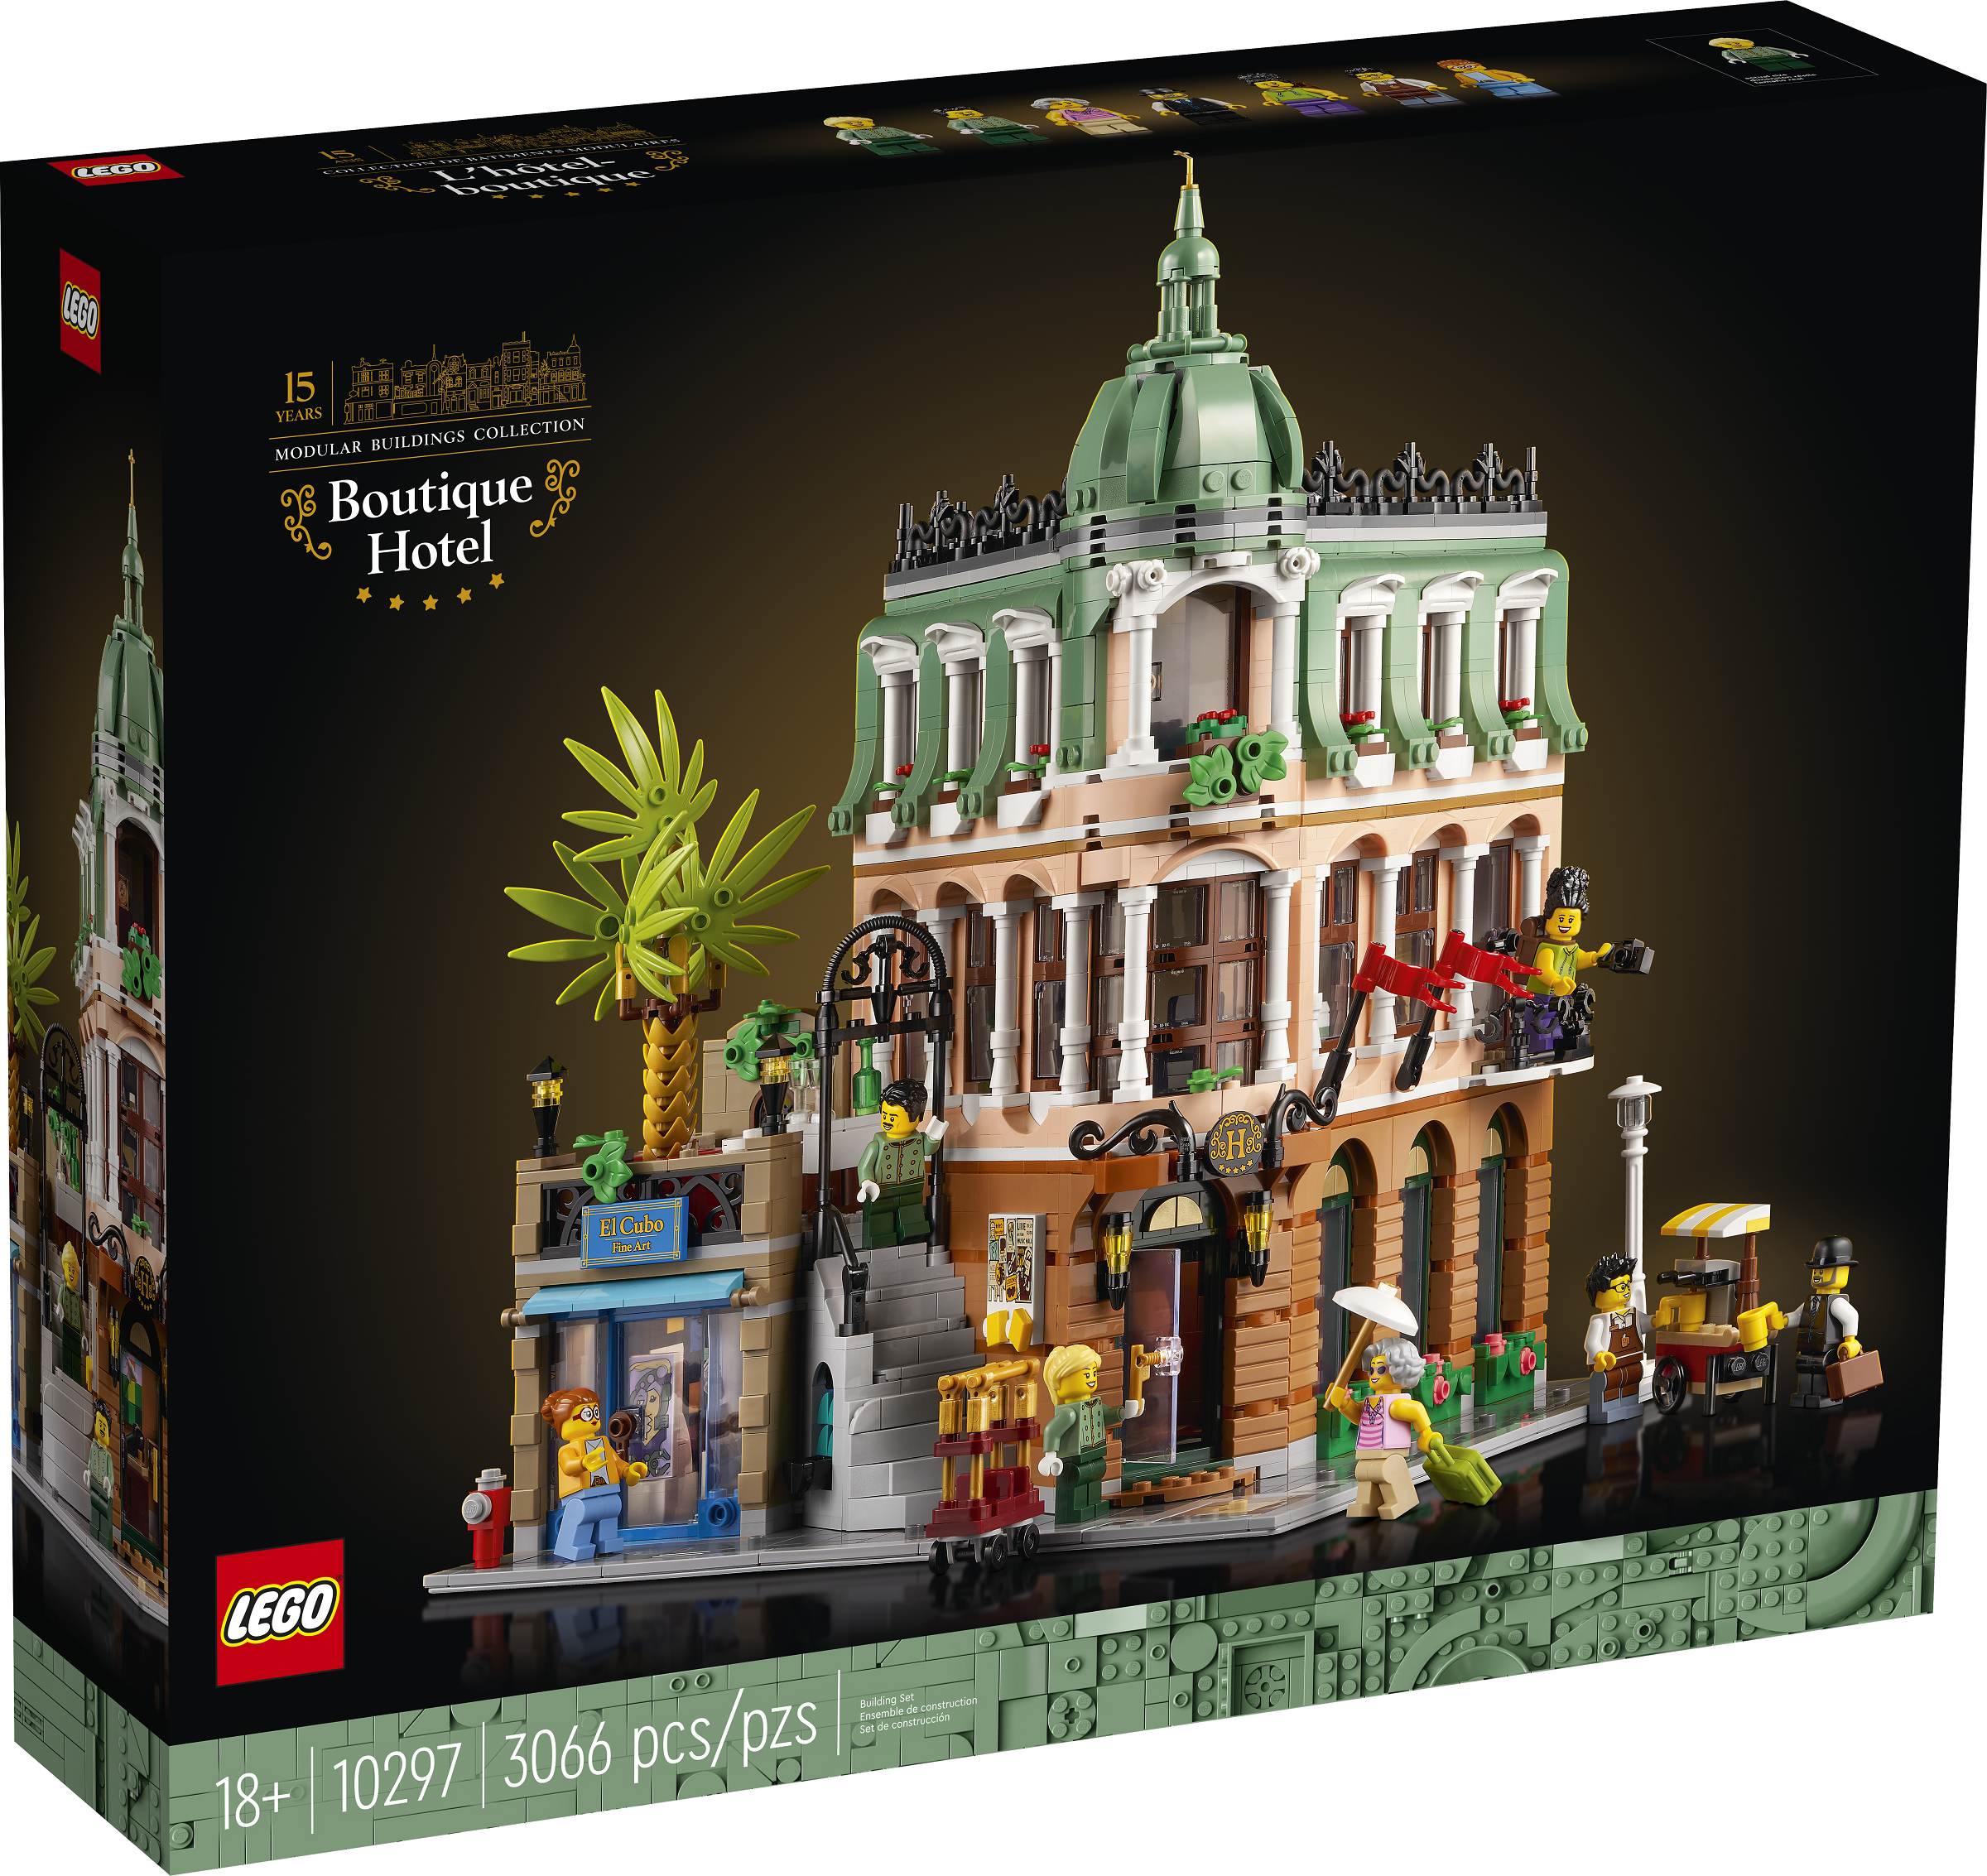 LEGO Creator Expert Boutique-Hotel (10297) - im GOLDSTIEN.SHOP verfügbar mit Gratisversand ab Schweizer Lager! (5702017151847)